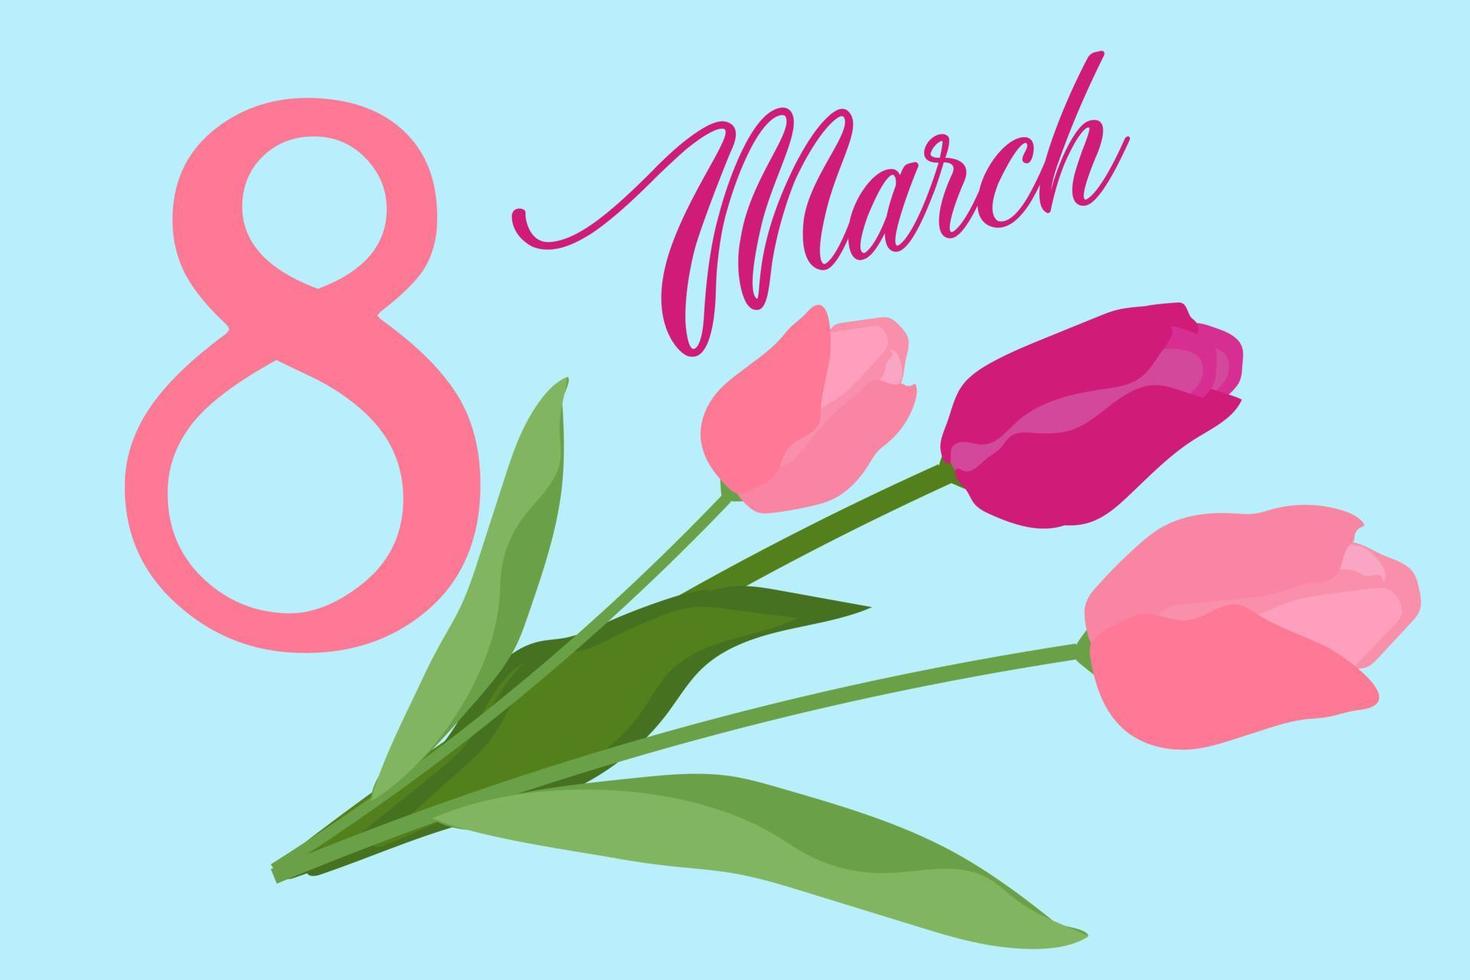 marcha 8 cumprimento cartão dentro □ Gentil Rosa cores, plano mão desenhado Projeto com tulipa flores vetor